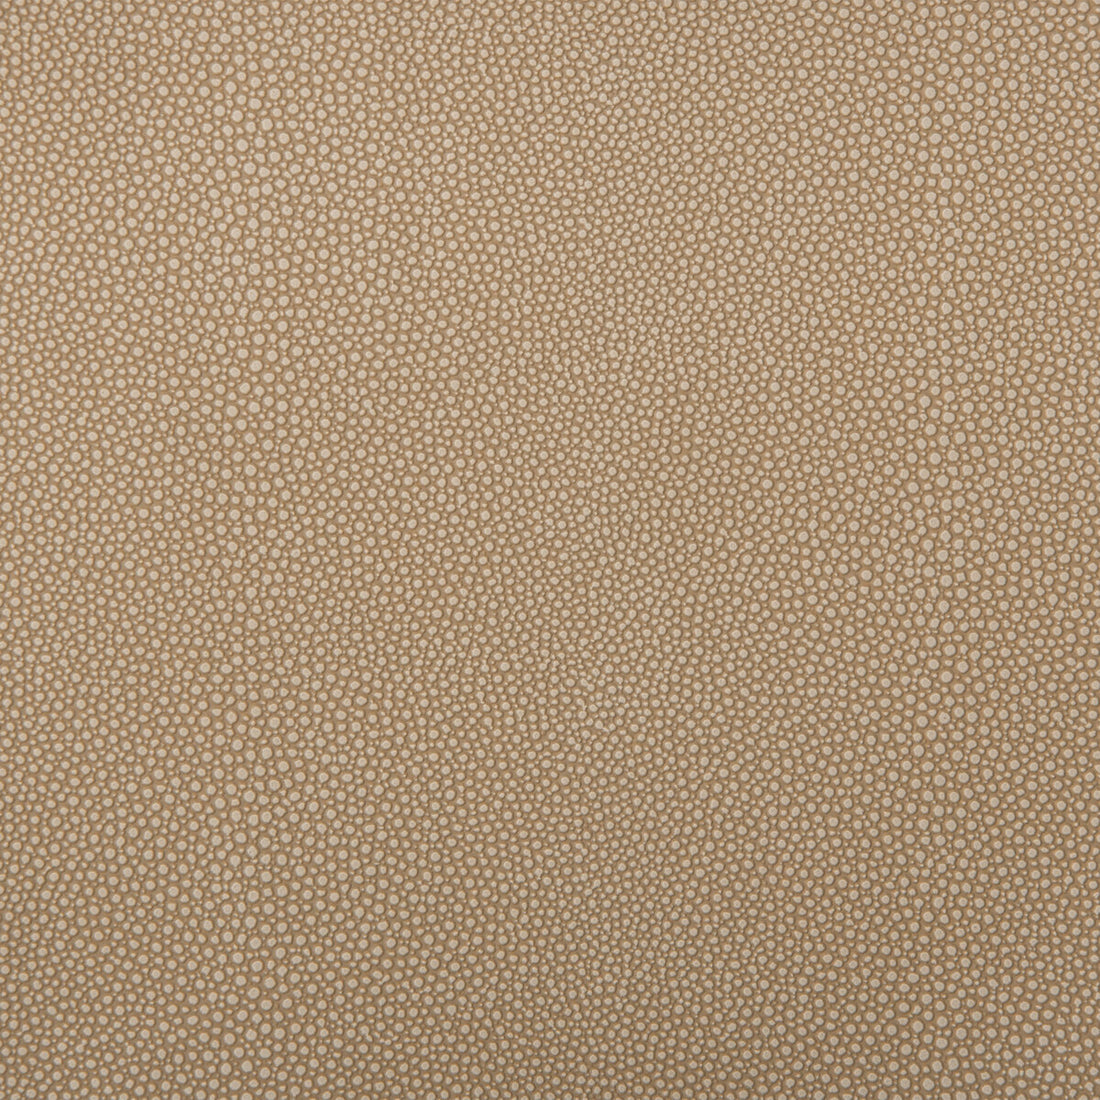 Kravet Design fabric in mindy-106 color - pattern MINDY.106.0 - by Kravet Design